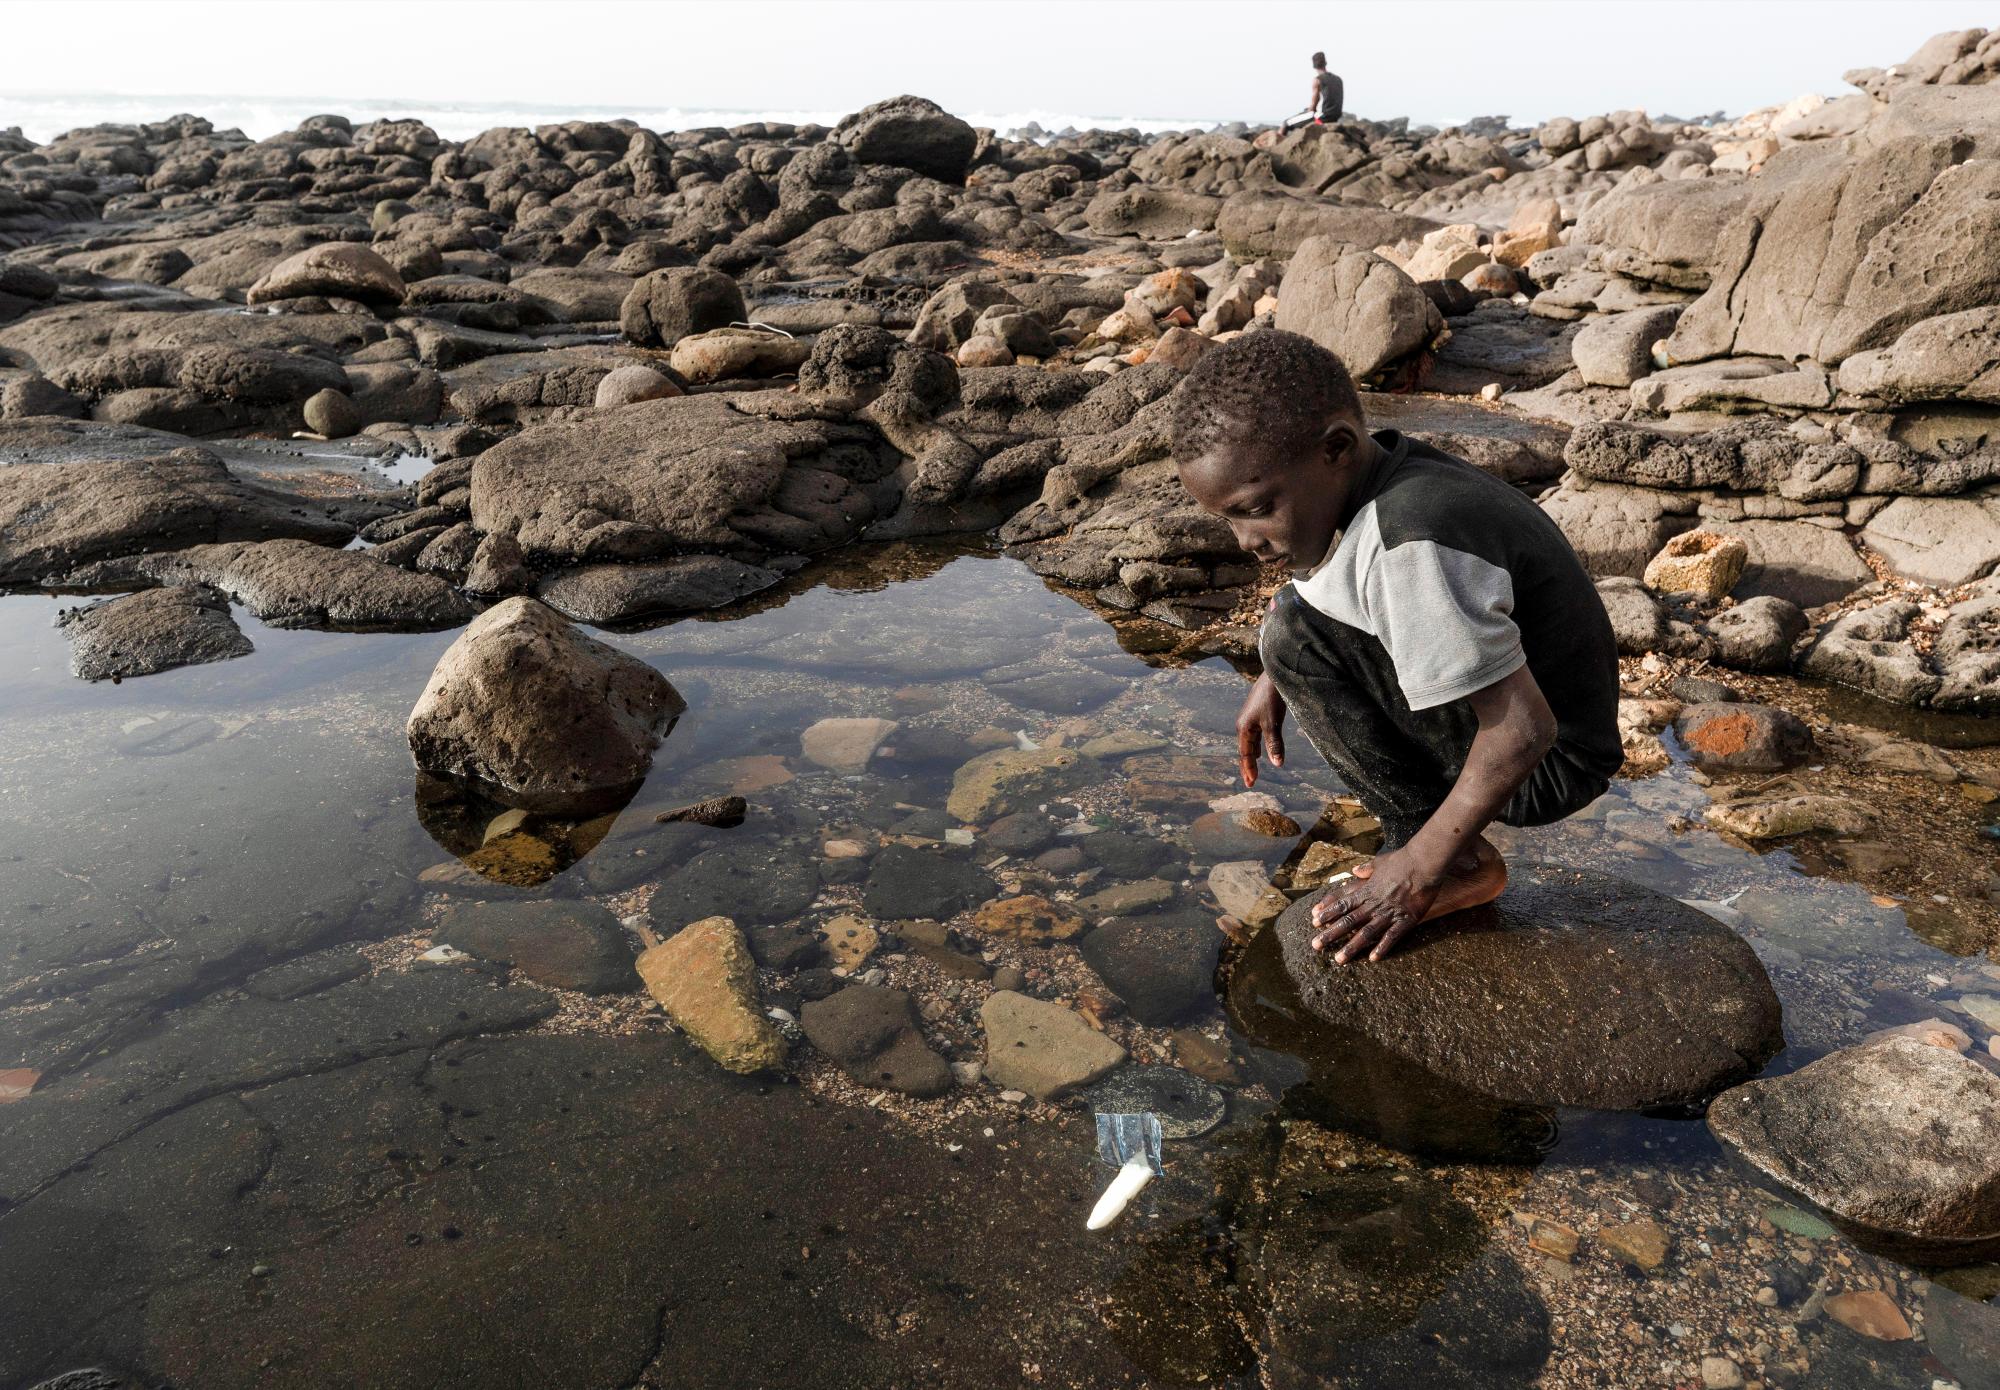 NGOR (SENEGAL), 12/03/2019.- Un niño senegalés juega con un barco hecho de plástico en la costa de la aldea de Ngor en Dakar, Senegal. El país africano desecha cada año decenas de miles de toneladas de plástico que acaba en el fondo del océano. Un problema que no solo afecta a su población costera, sino también a su economía. Debido a la falta de mecanismos de gestión de estos residuos por parte de los ayuntamientos, las comunidades han realizado sus propias limpiezas en algunas aldeas. Los ecologistas piden un cambio de política respecto al uso del plástico por parte del gobierno de Senegal. EFE/ Nic Bothma